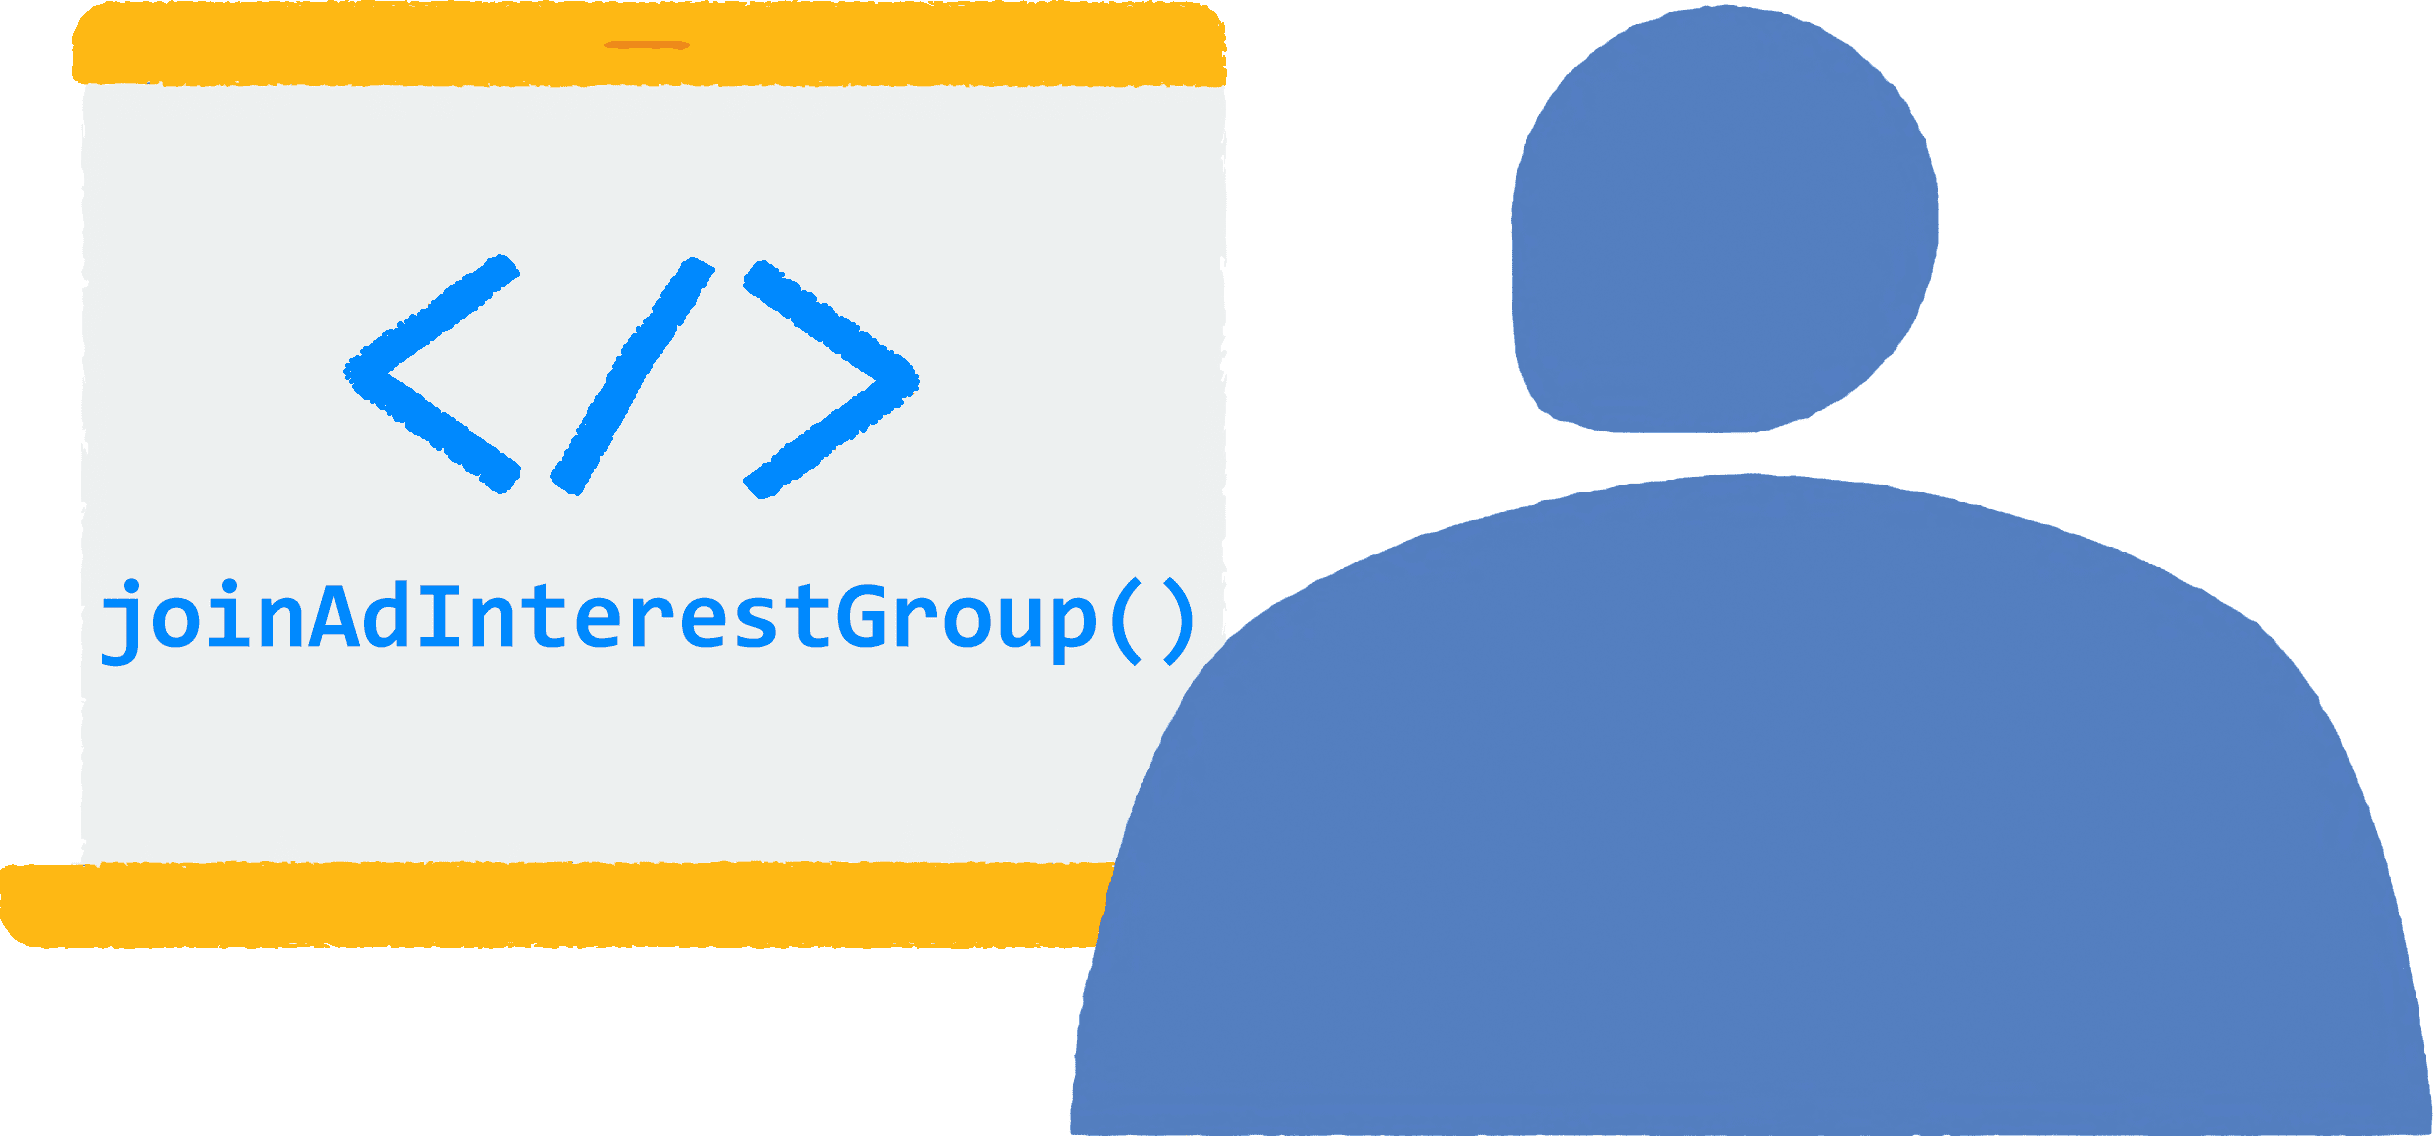 Un utente apre un browser sul laptop e visita un sito. Il codice JavaScript per partecipare ai gruppi basati sugli interessi degli annunci viene eseguito nel browser.